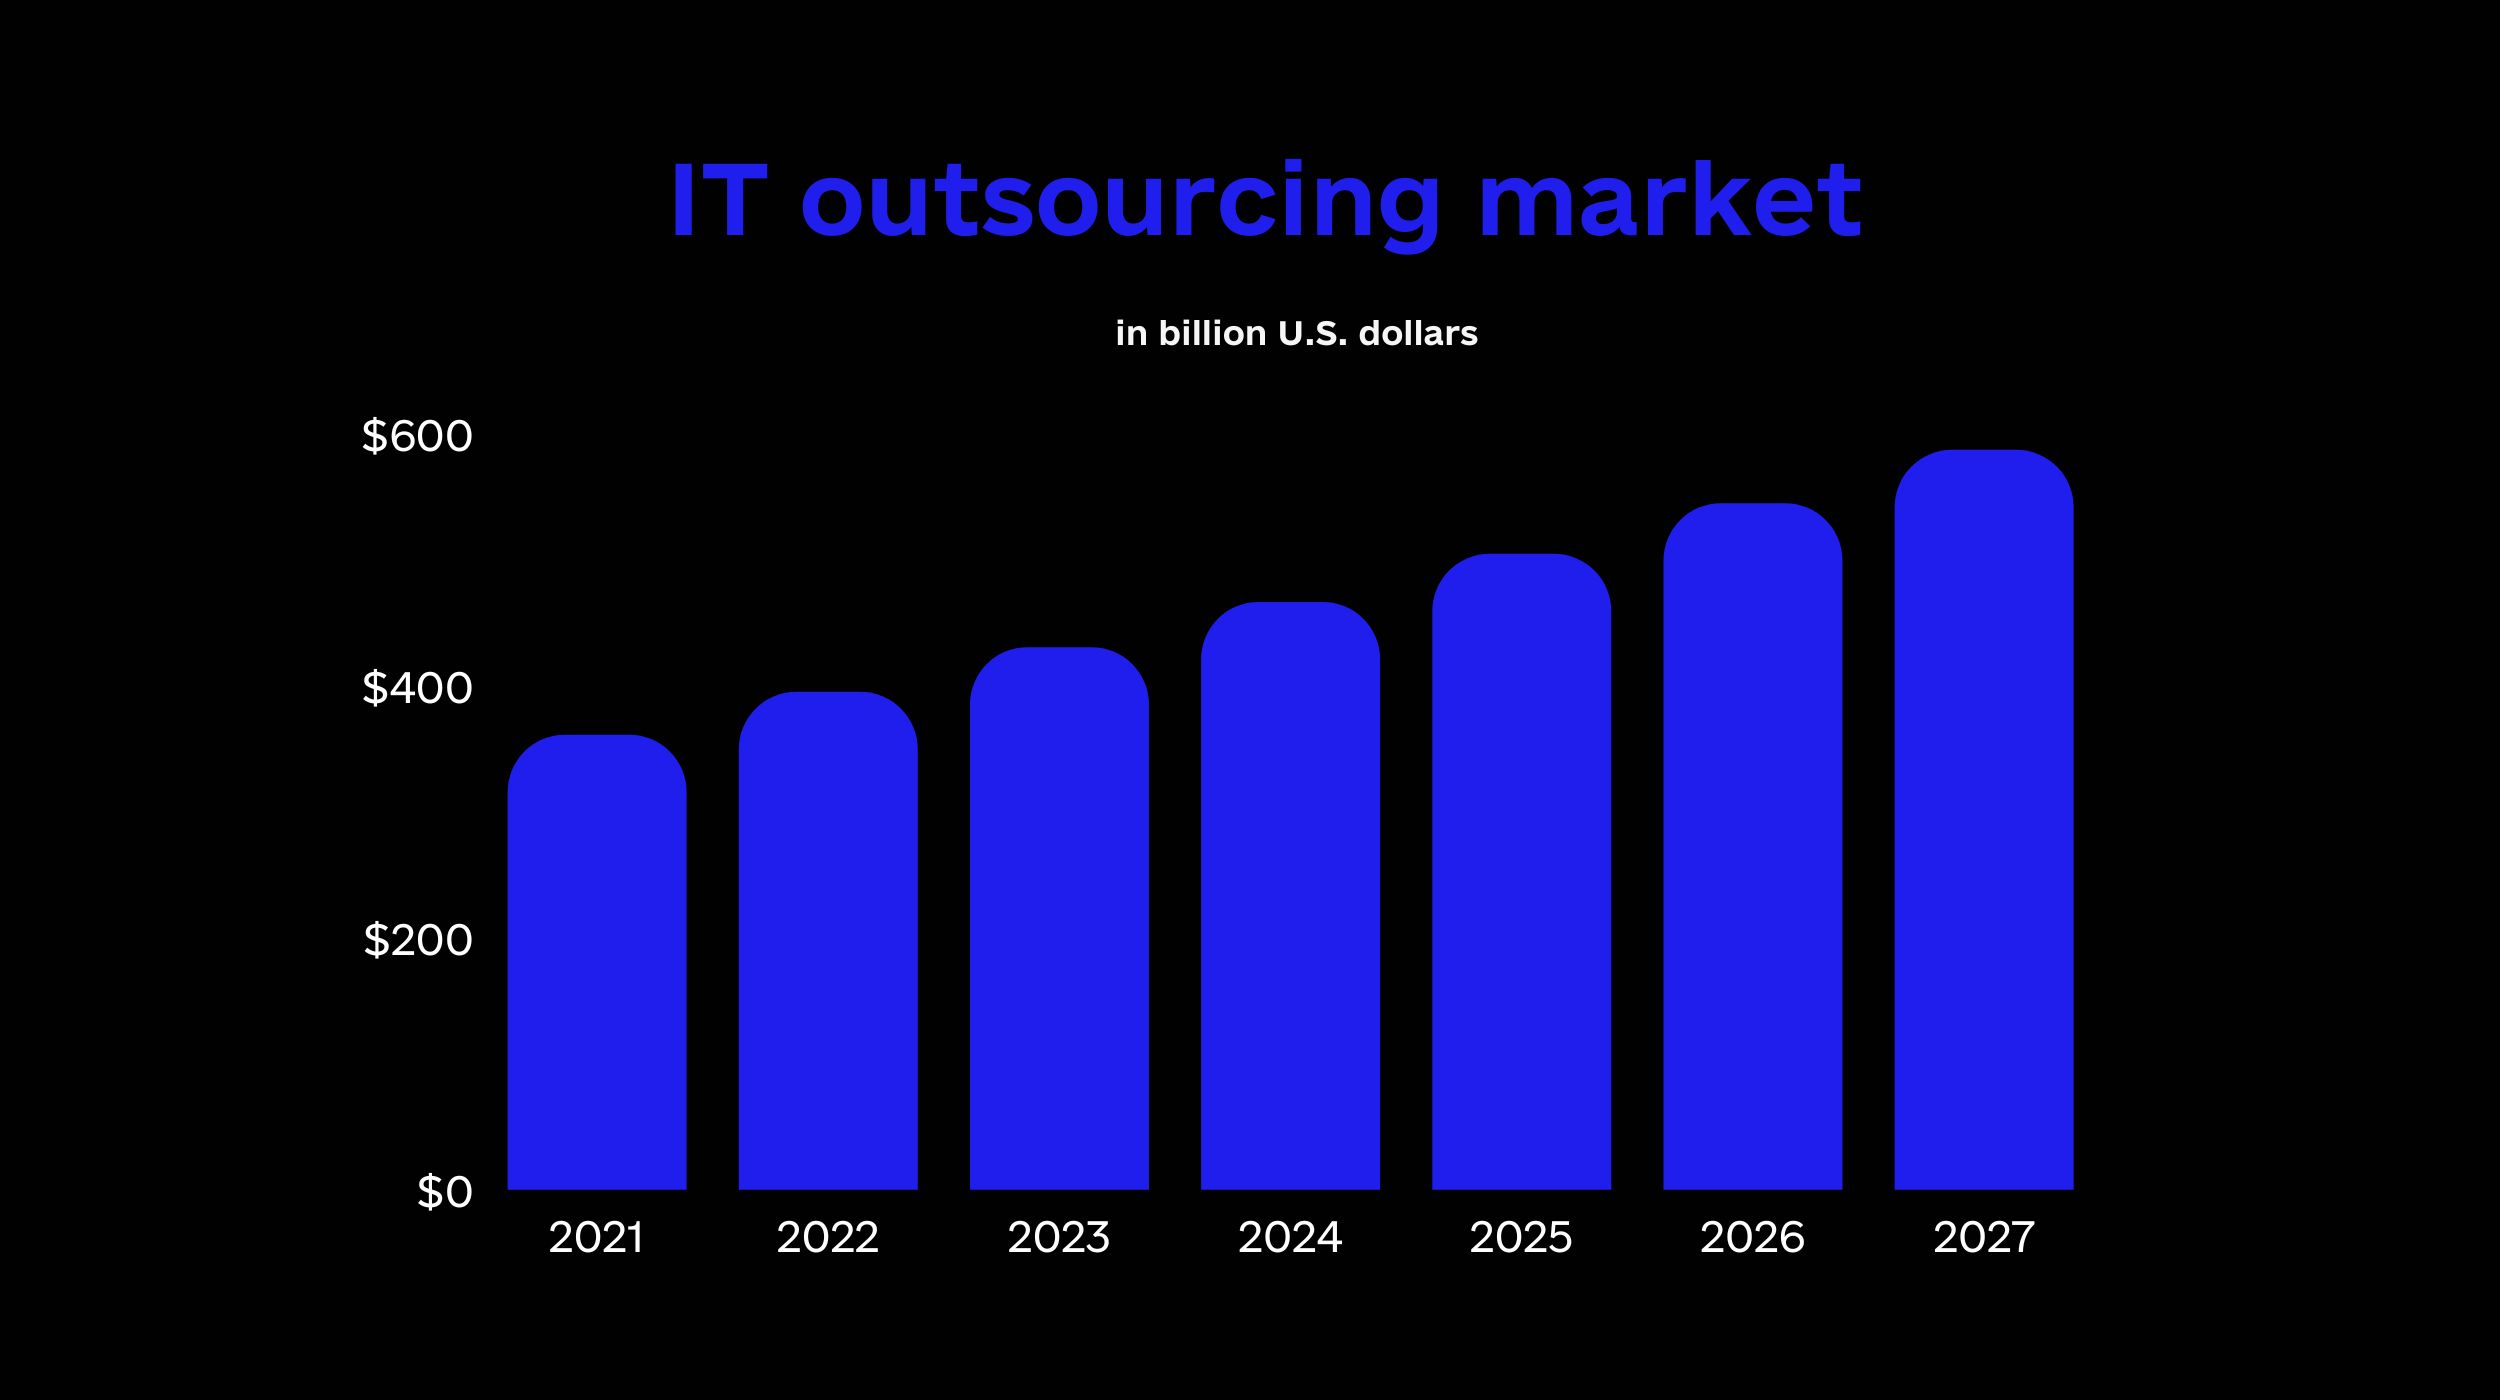 IT outsourcing market was worth around $395 billion